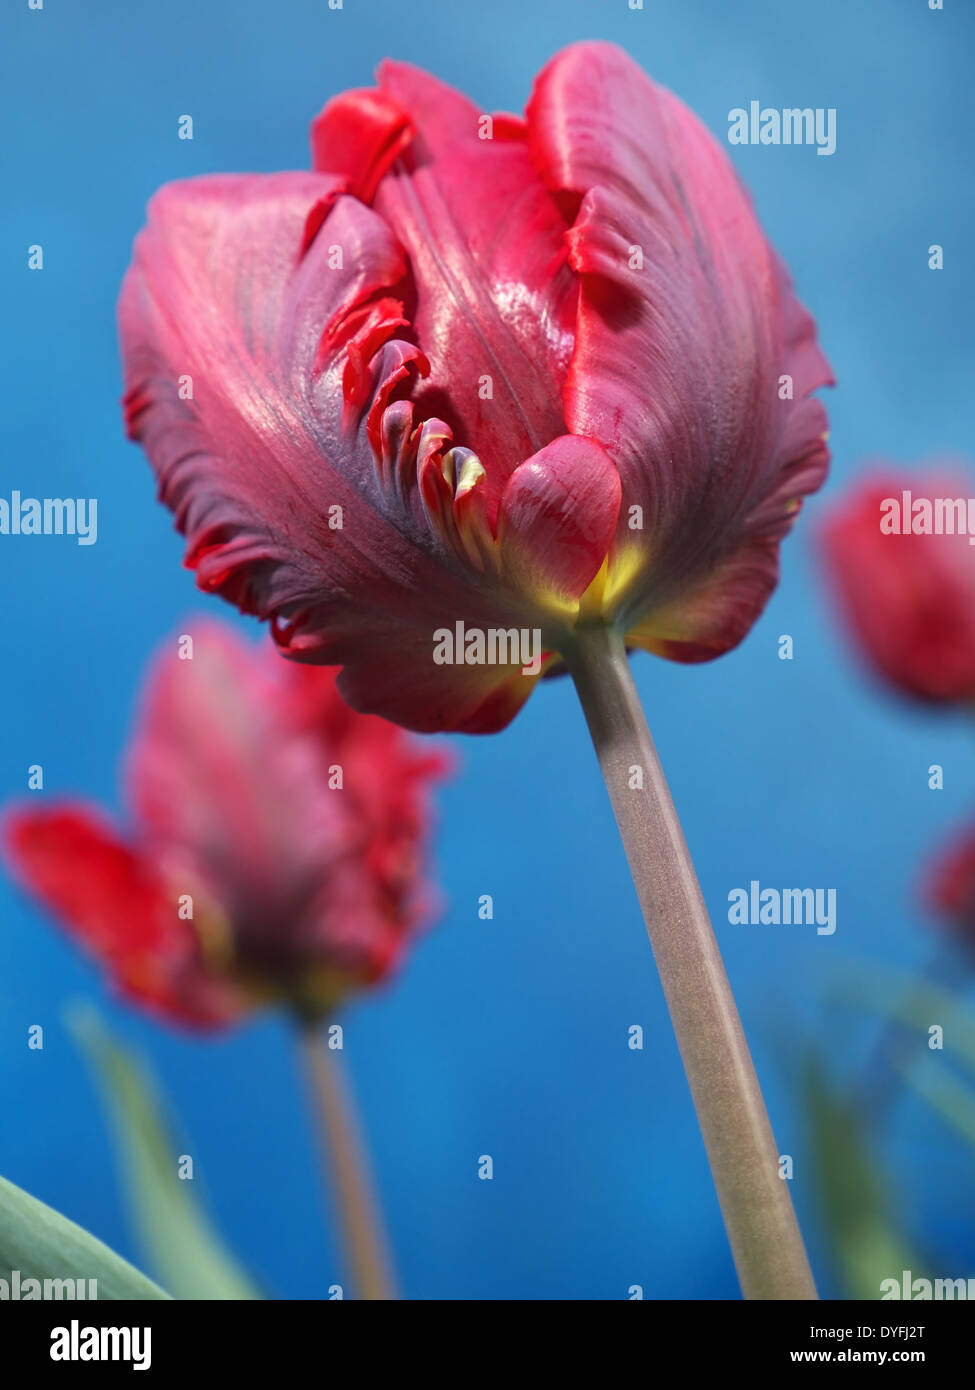 Red Parrot tulips tourné sur fond bleu Banque D'Images